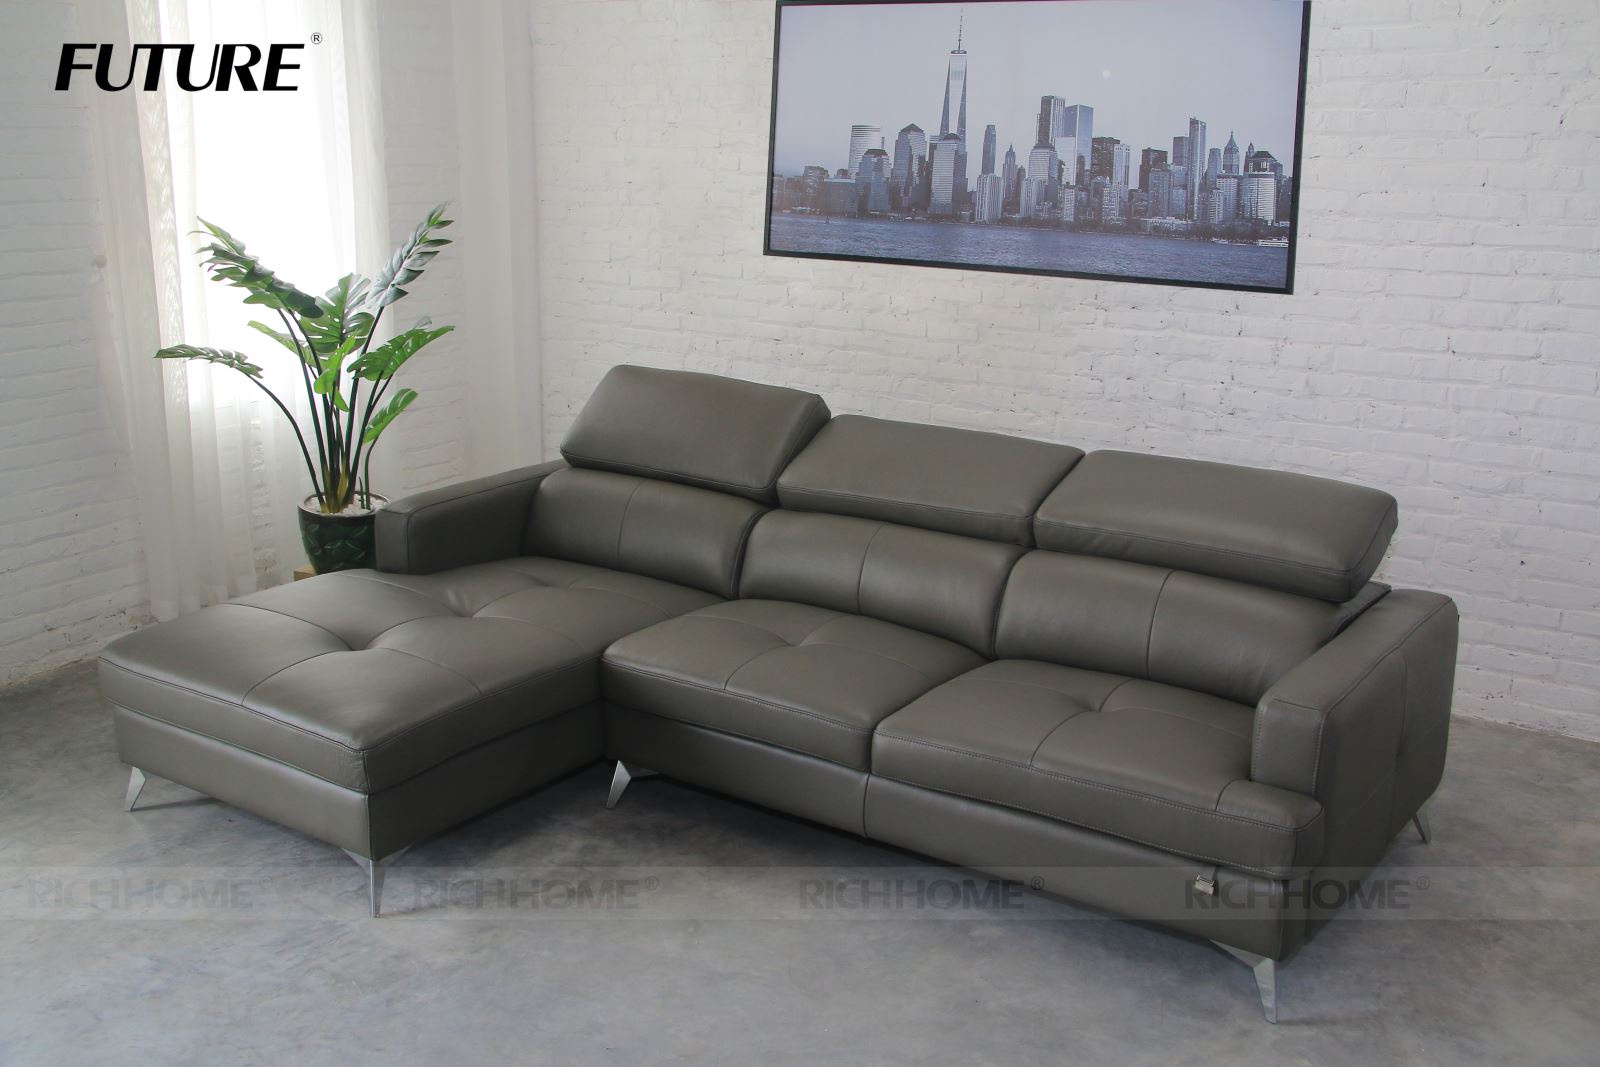 Cách chọn mẫu ghế sofa đẹp nhất cho phòng khách 15m2 - Ảnh 4